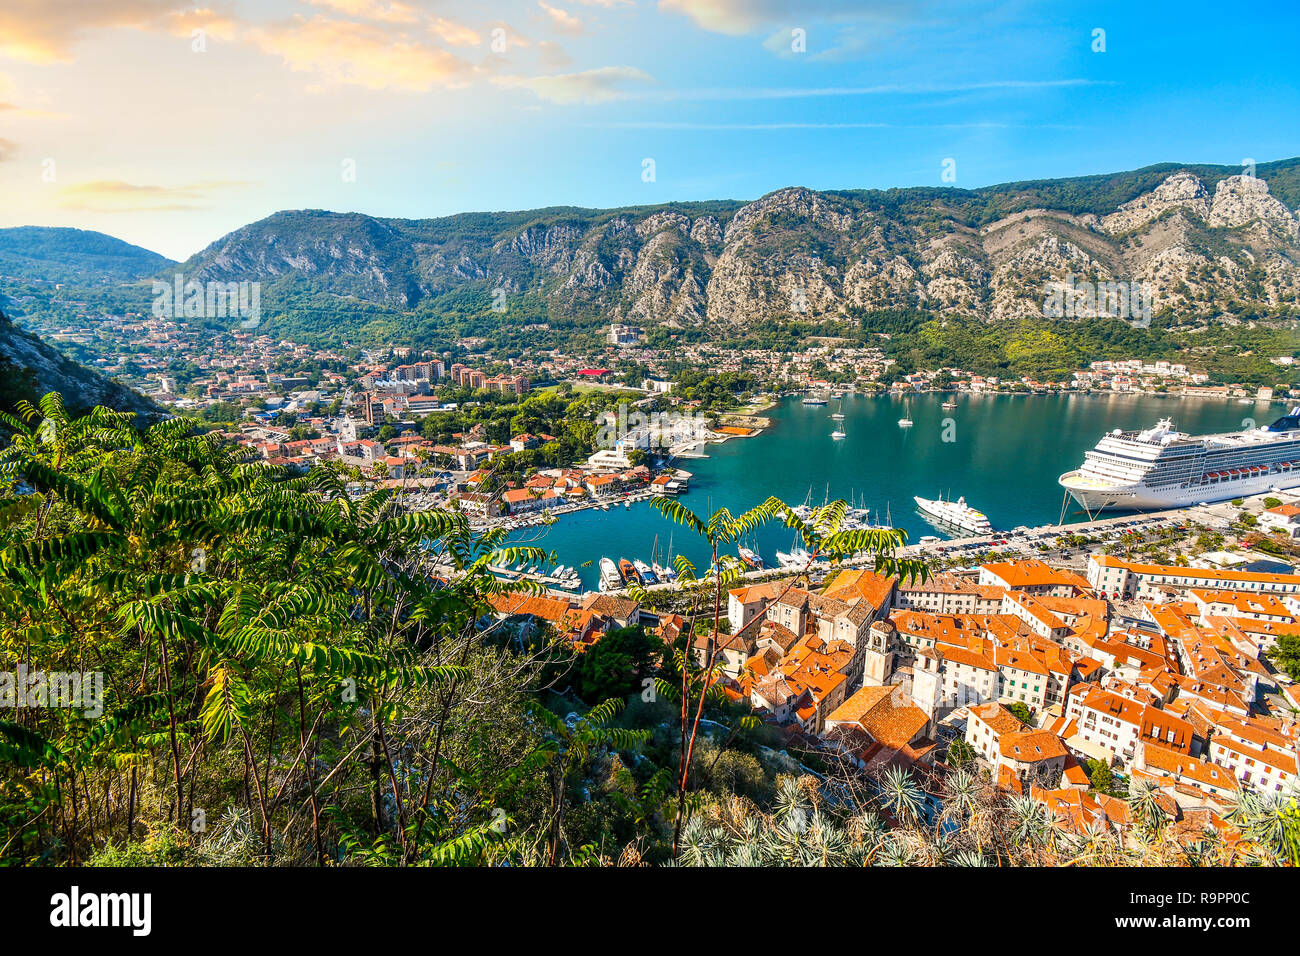 Ein Kreuzfahrtschiff ist von den Kotor Burgruinen gesehen, wie das in der Bucht von Kotor, Bucht, an der adriatischen Küste von Kotor, Montenegro Stockfoto